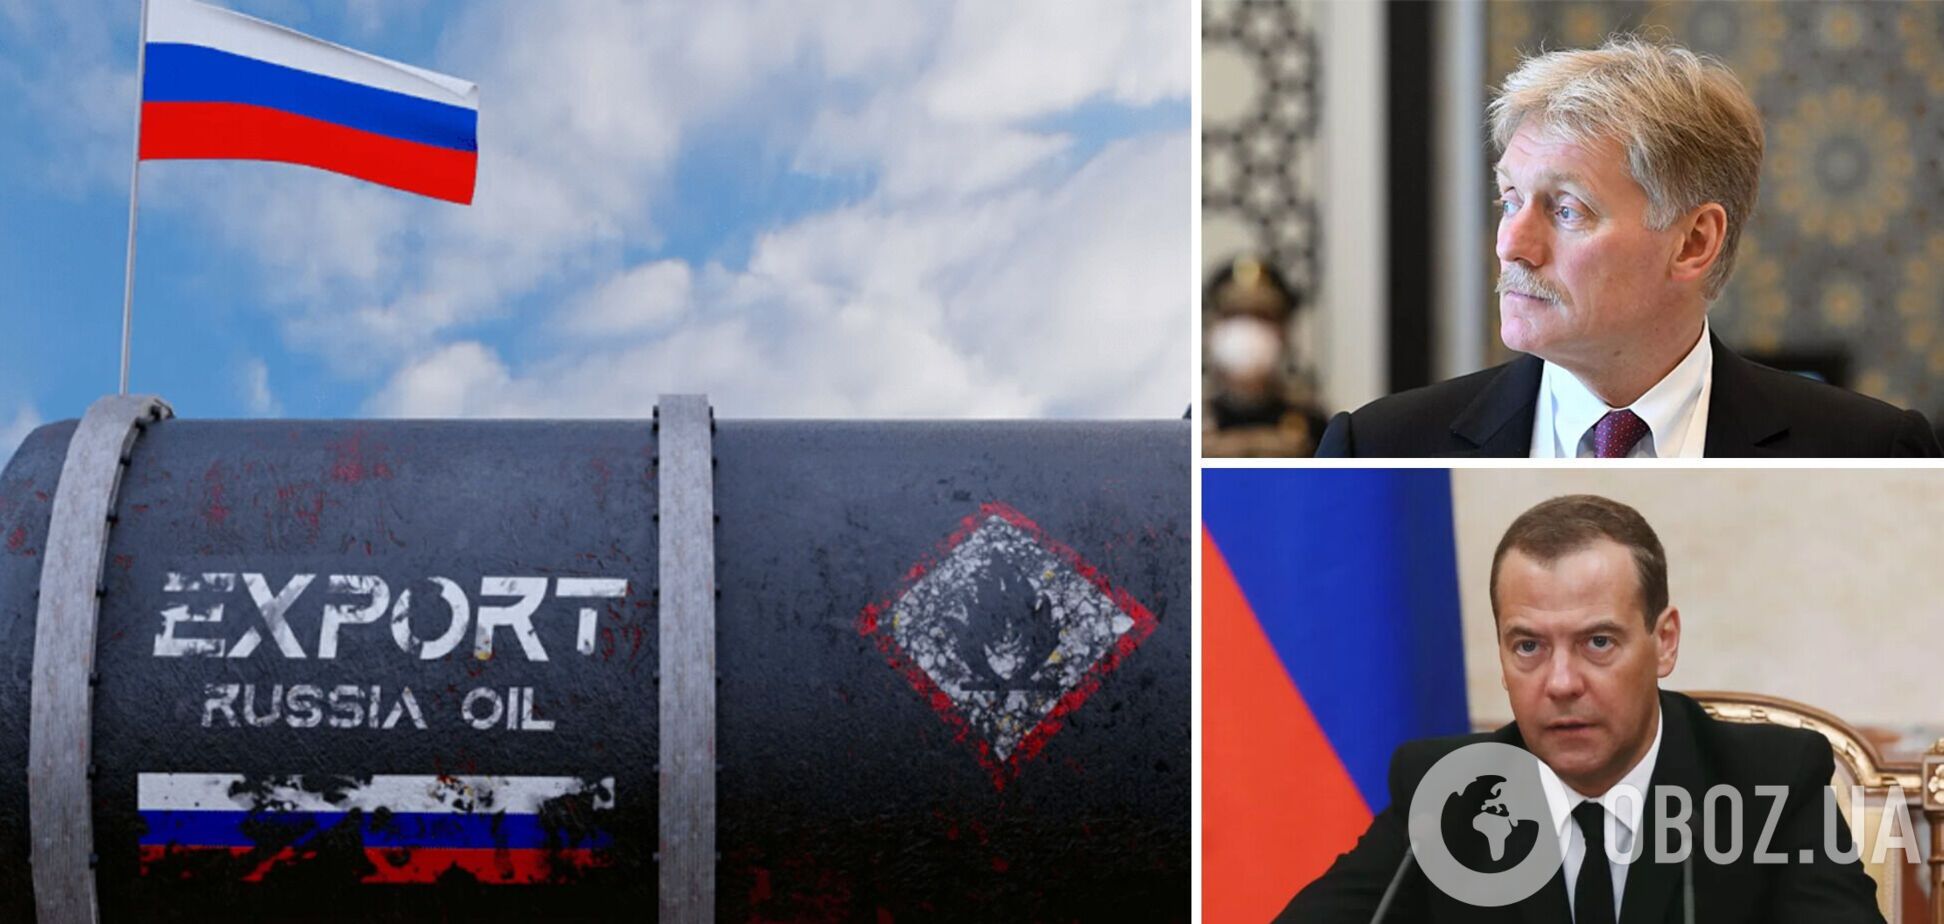 Як відповіли в Росії на санкції проти нафти